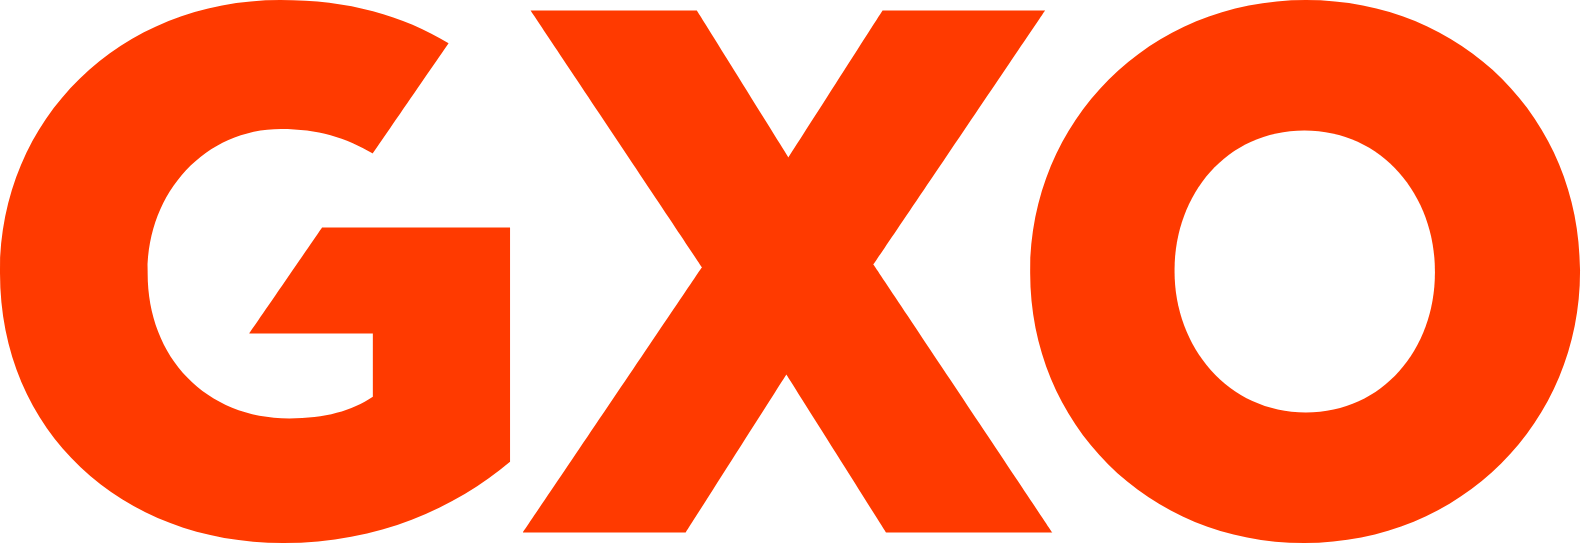 GXO Logistics logo (PNG transparent)